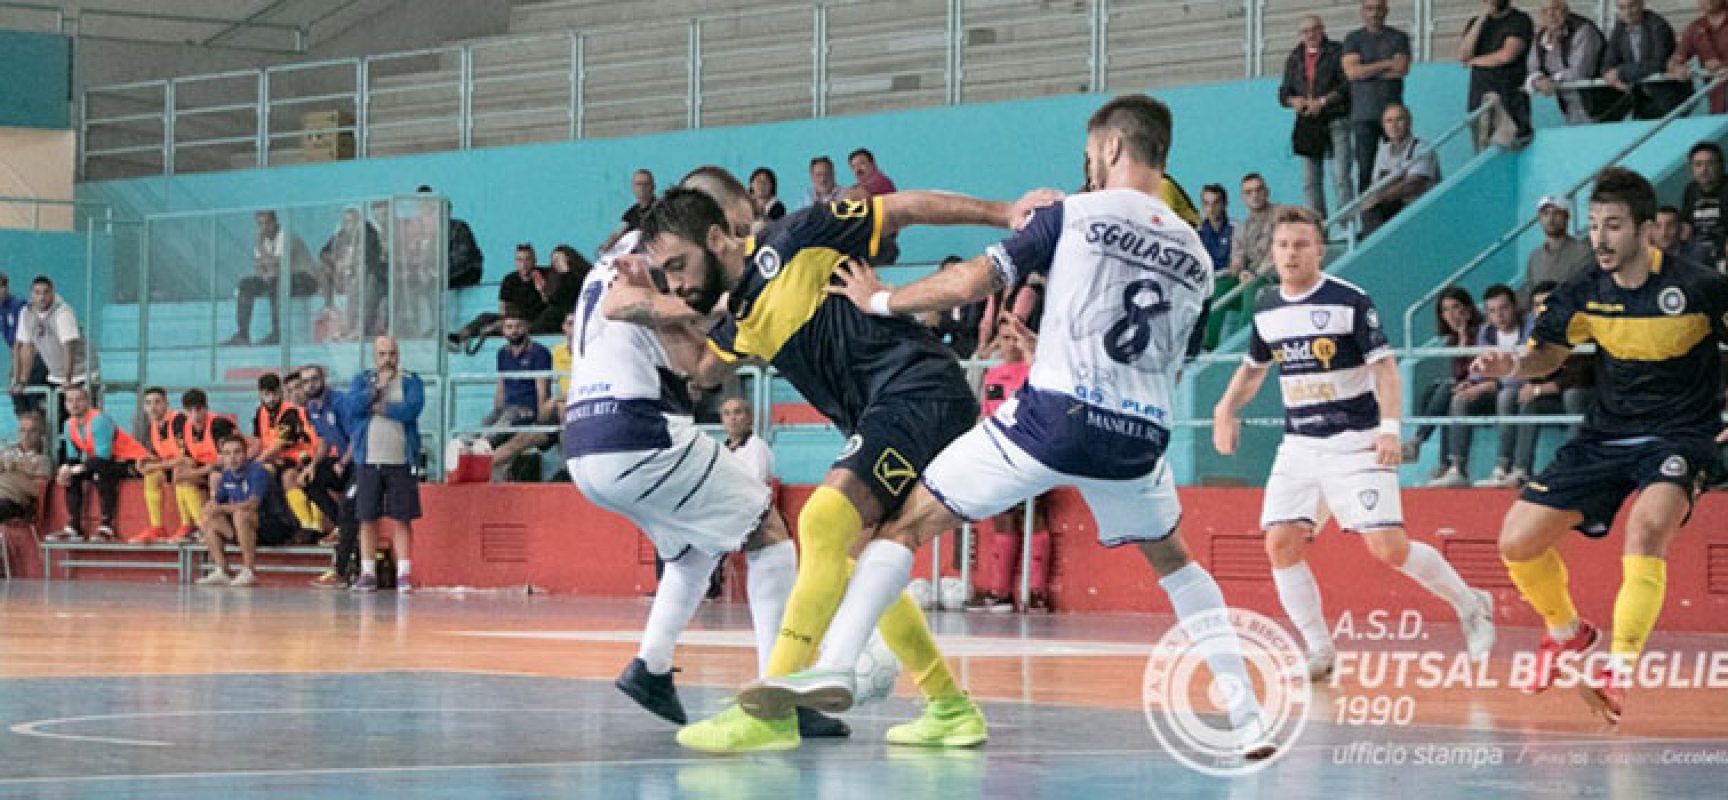 Il Futsal Bisceglie vuole rialzarsi, l’ex Sanchez sulla strada dei nerazzurri